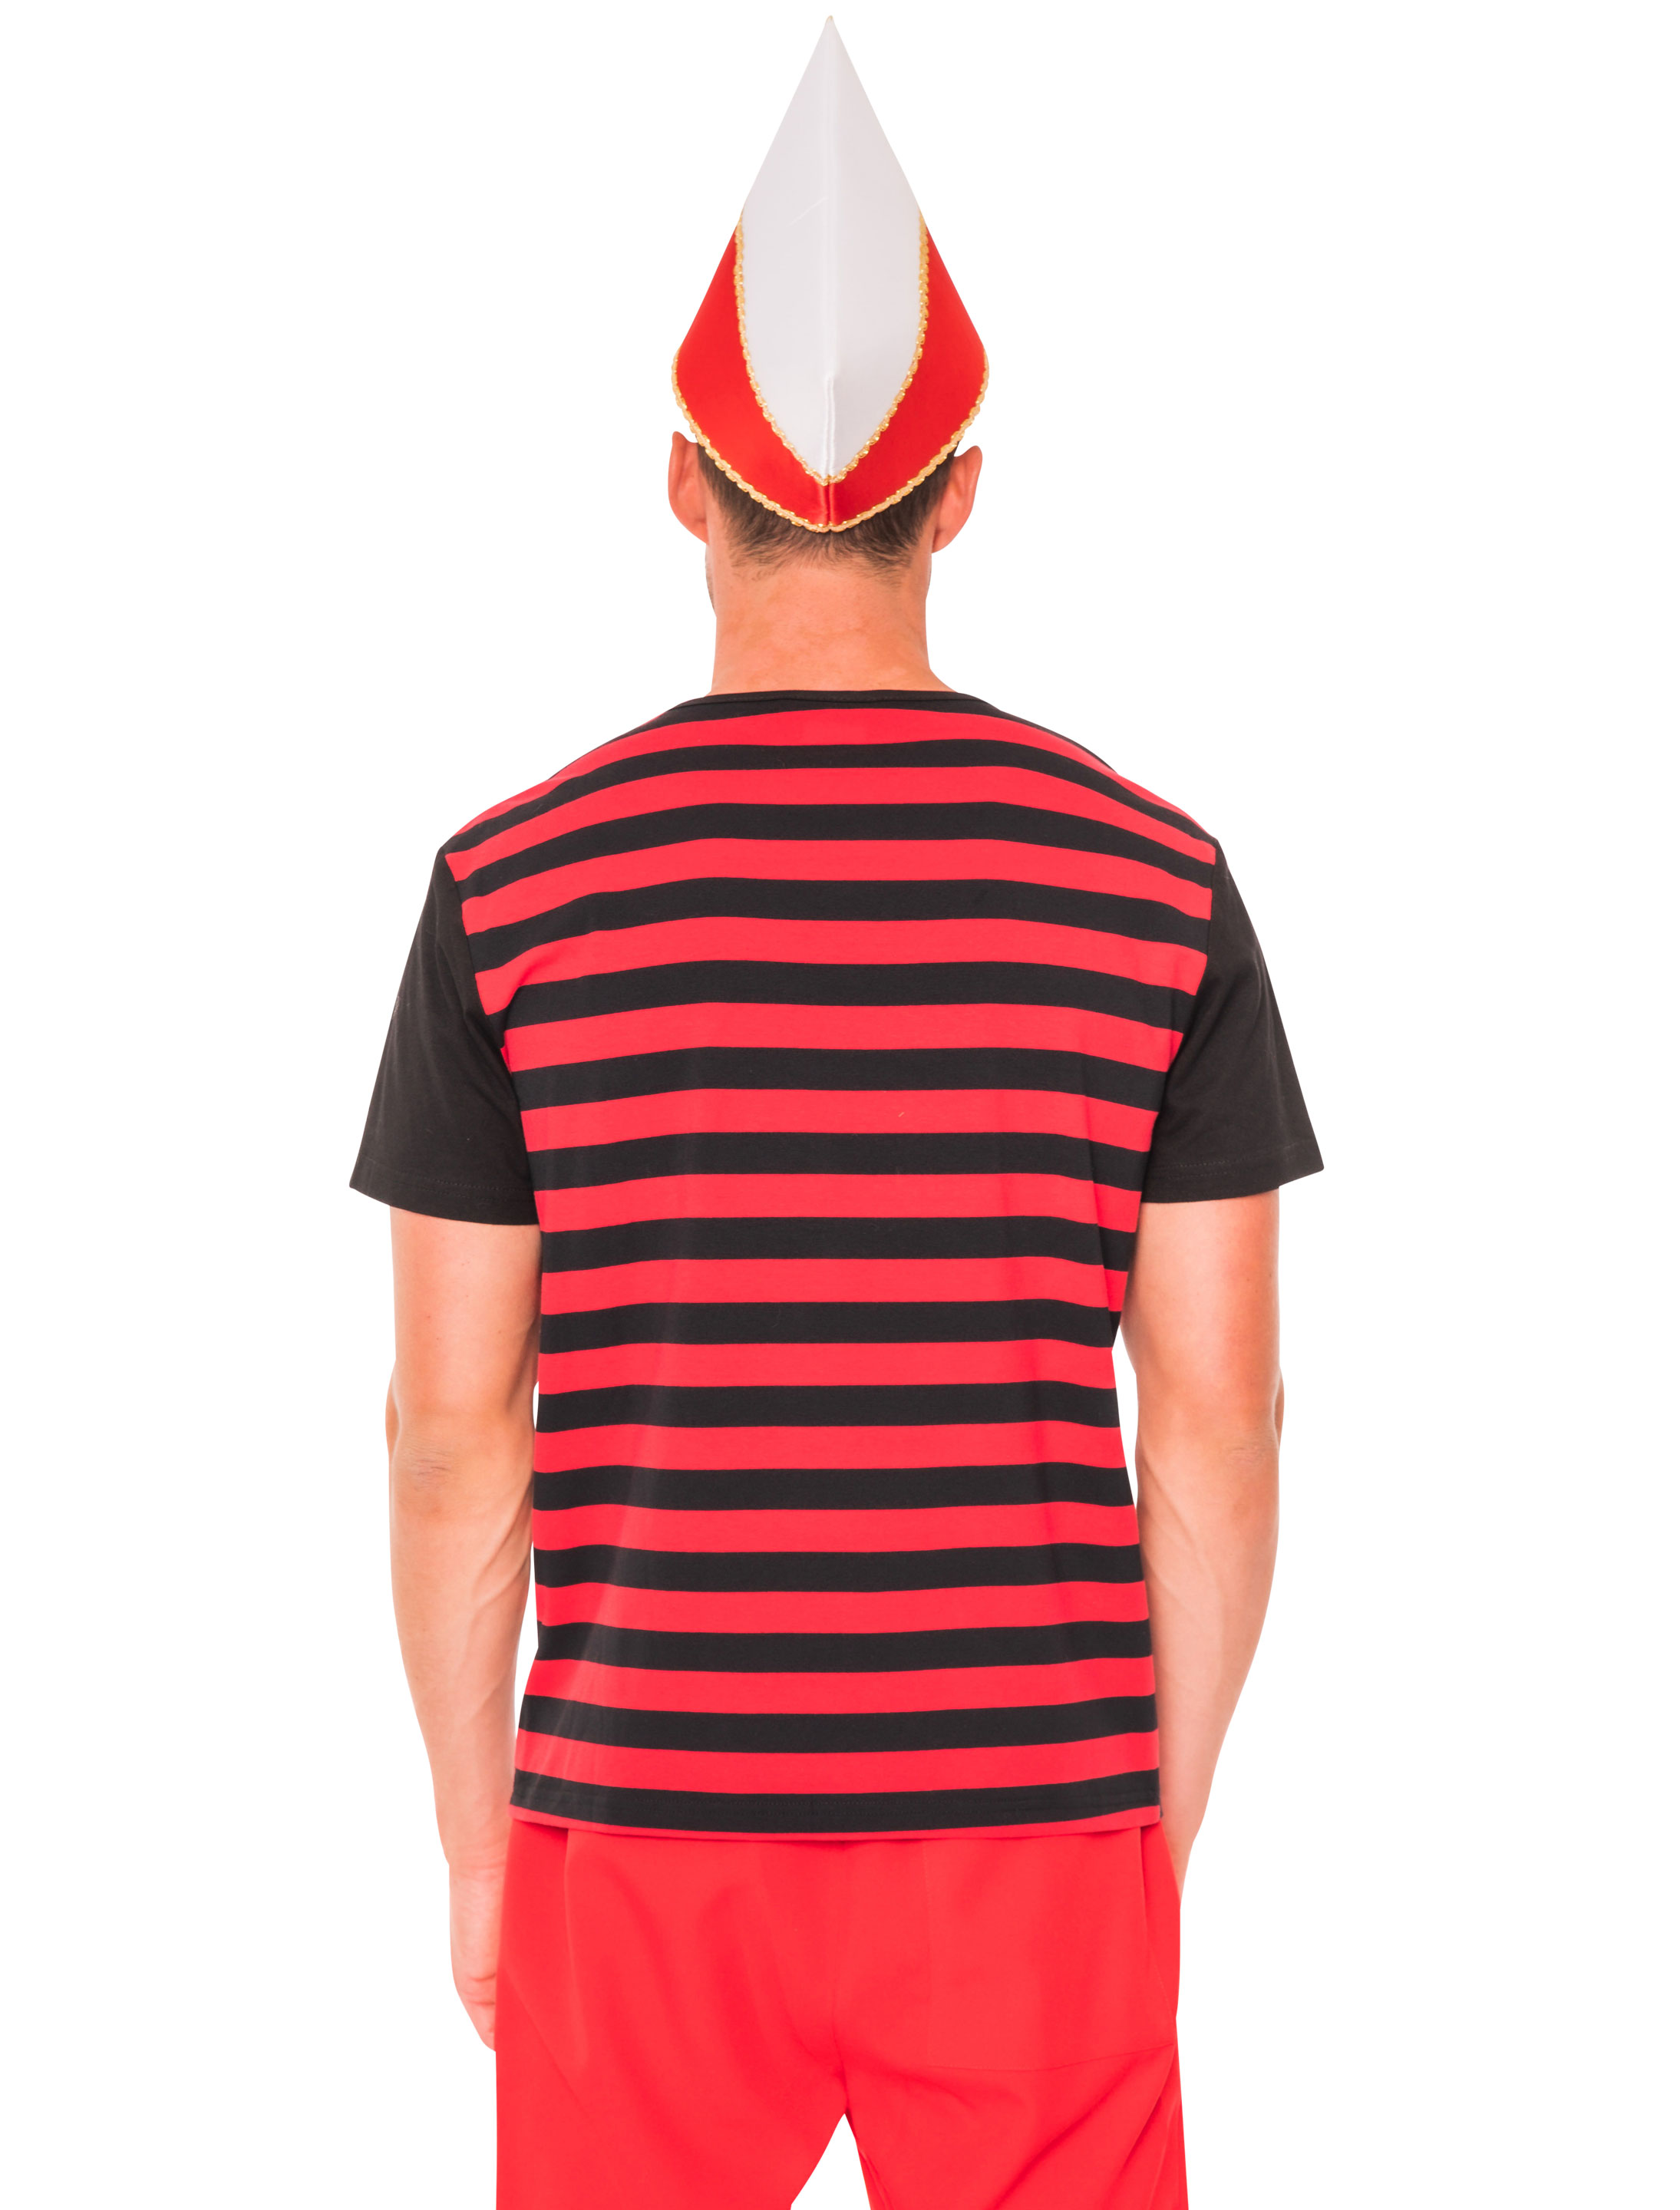 T-Shirt Köln Herren mit Wappen schwarz/rot 3XL